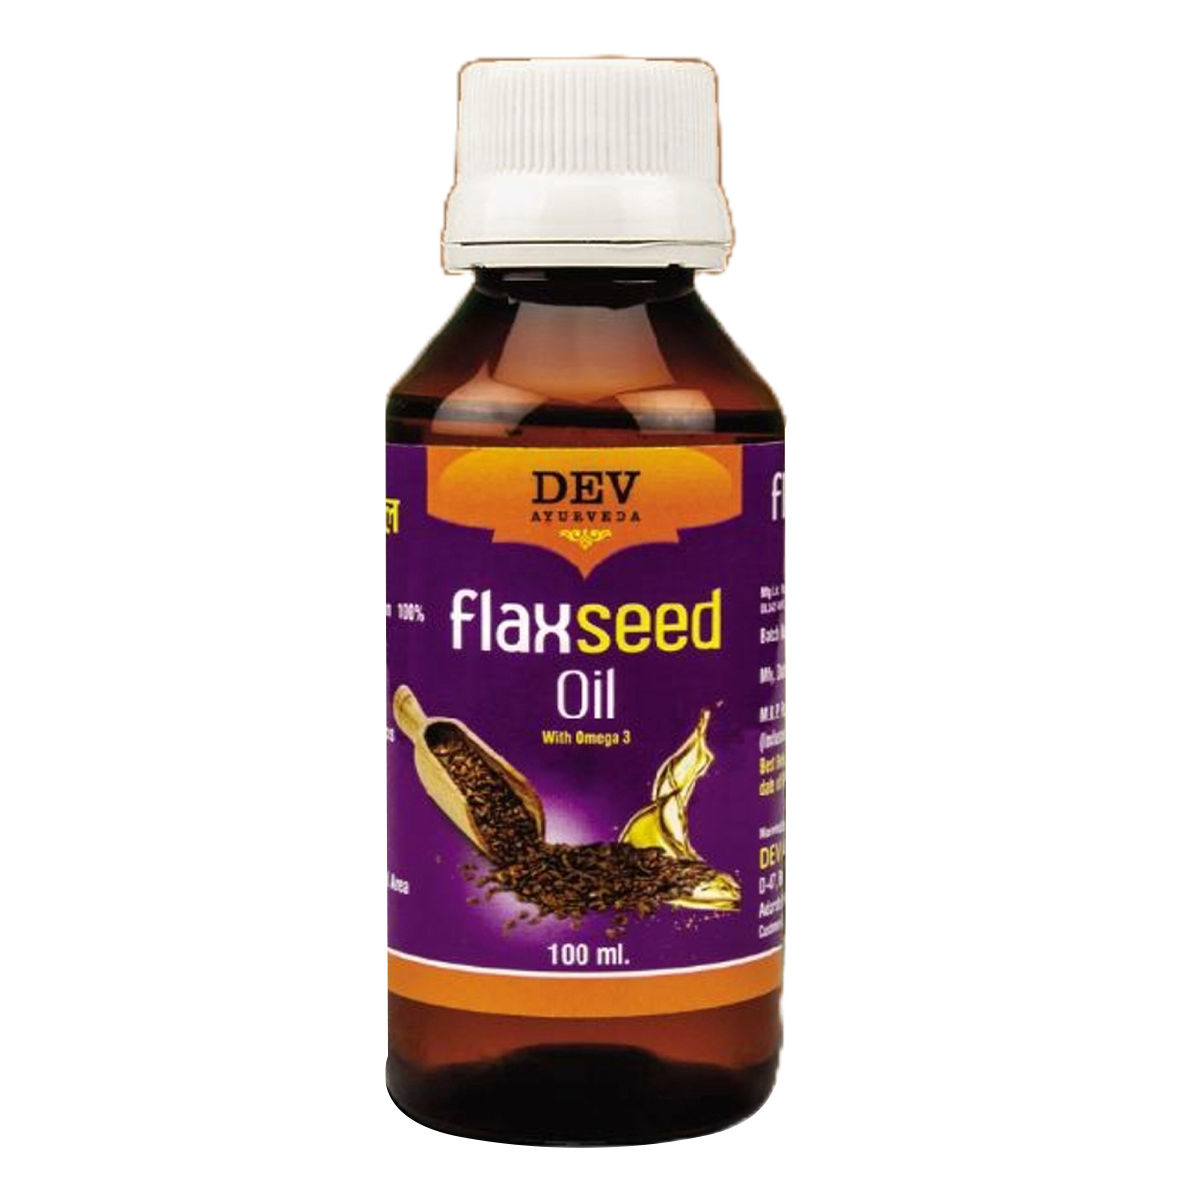 Buy Dev Flaxseed Oil 100 ml Online